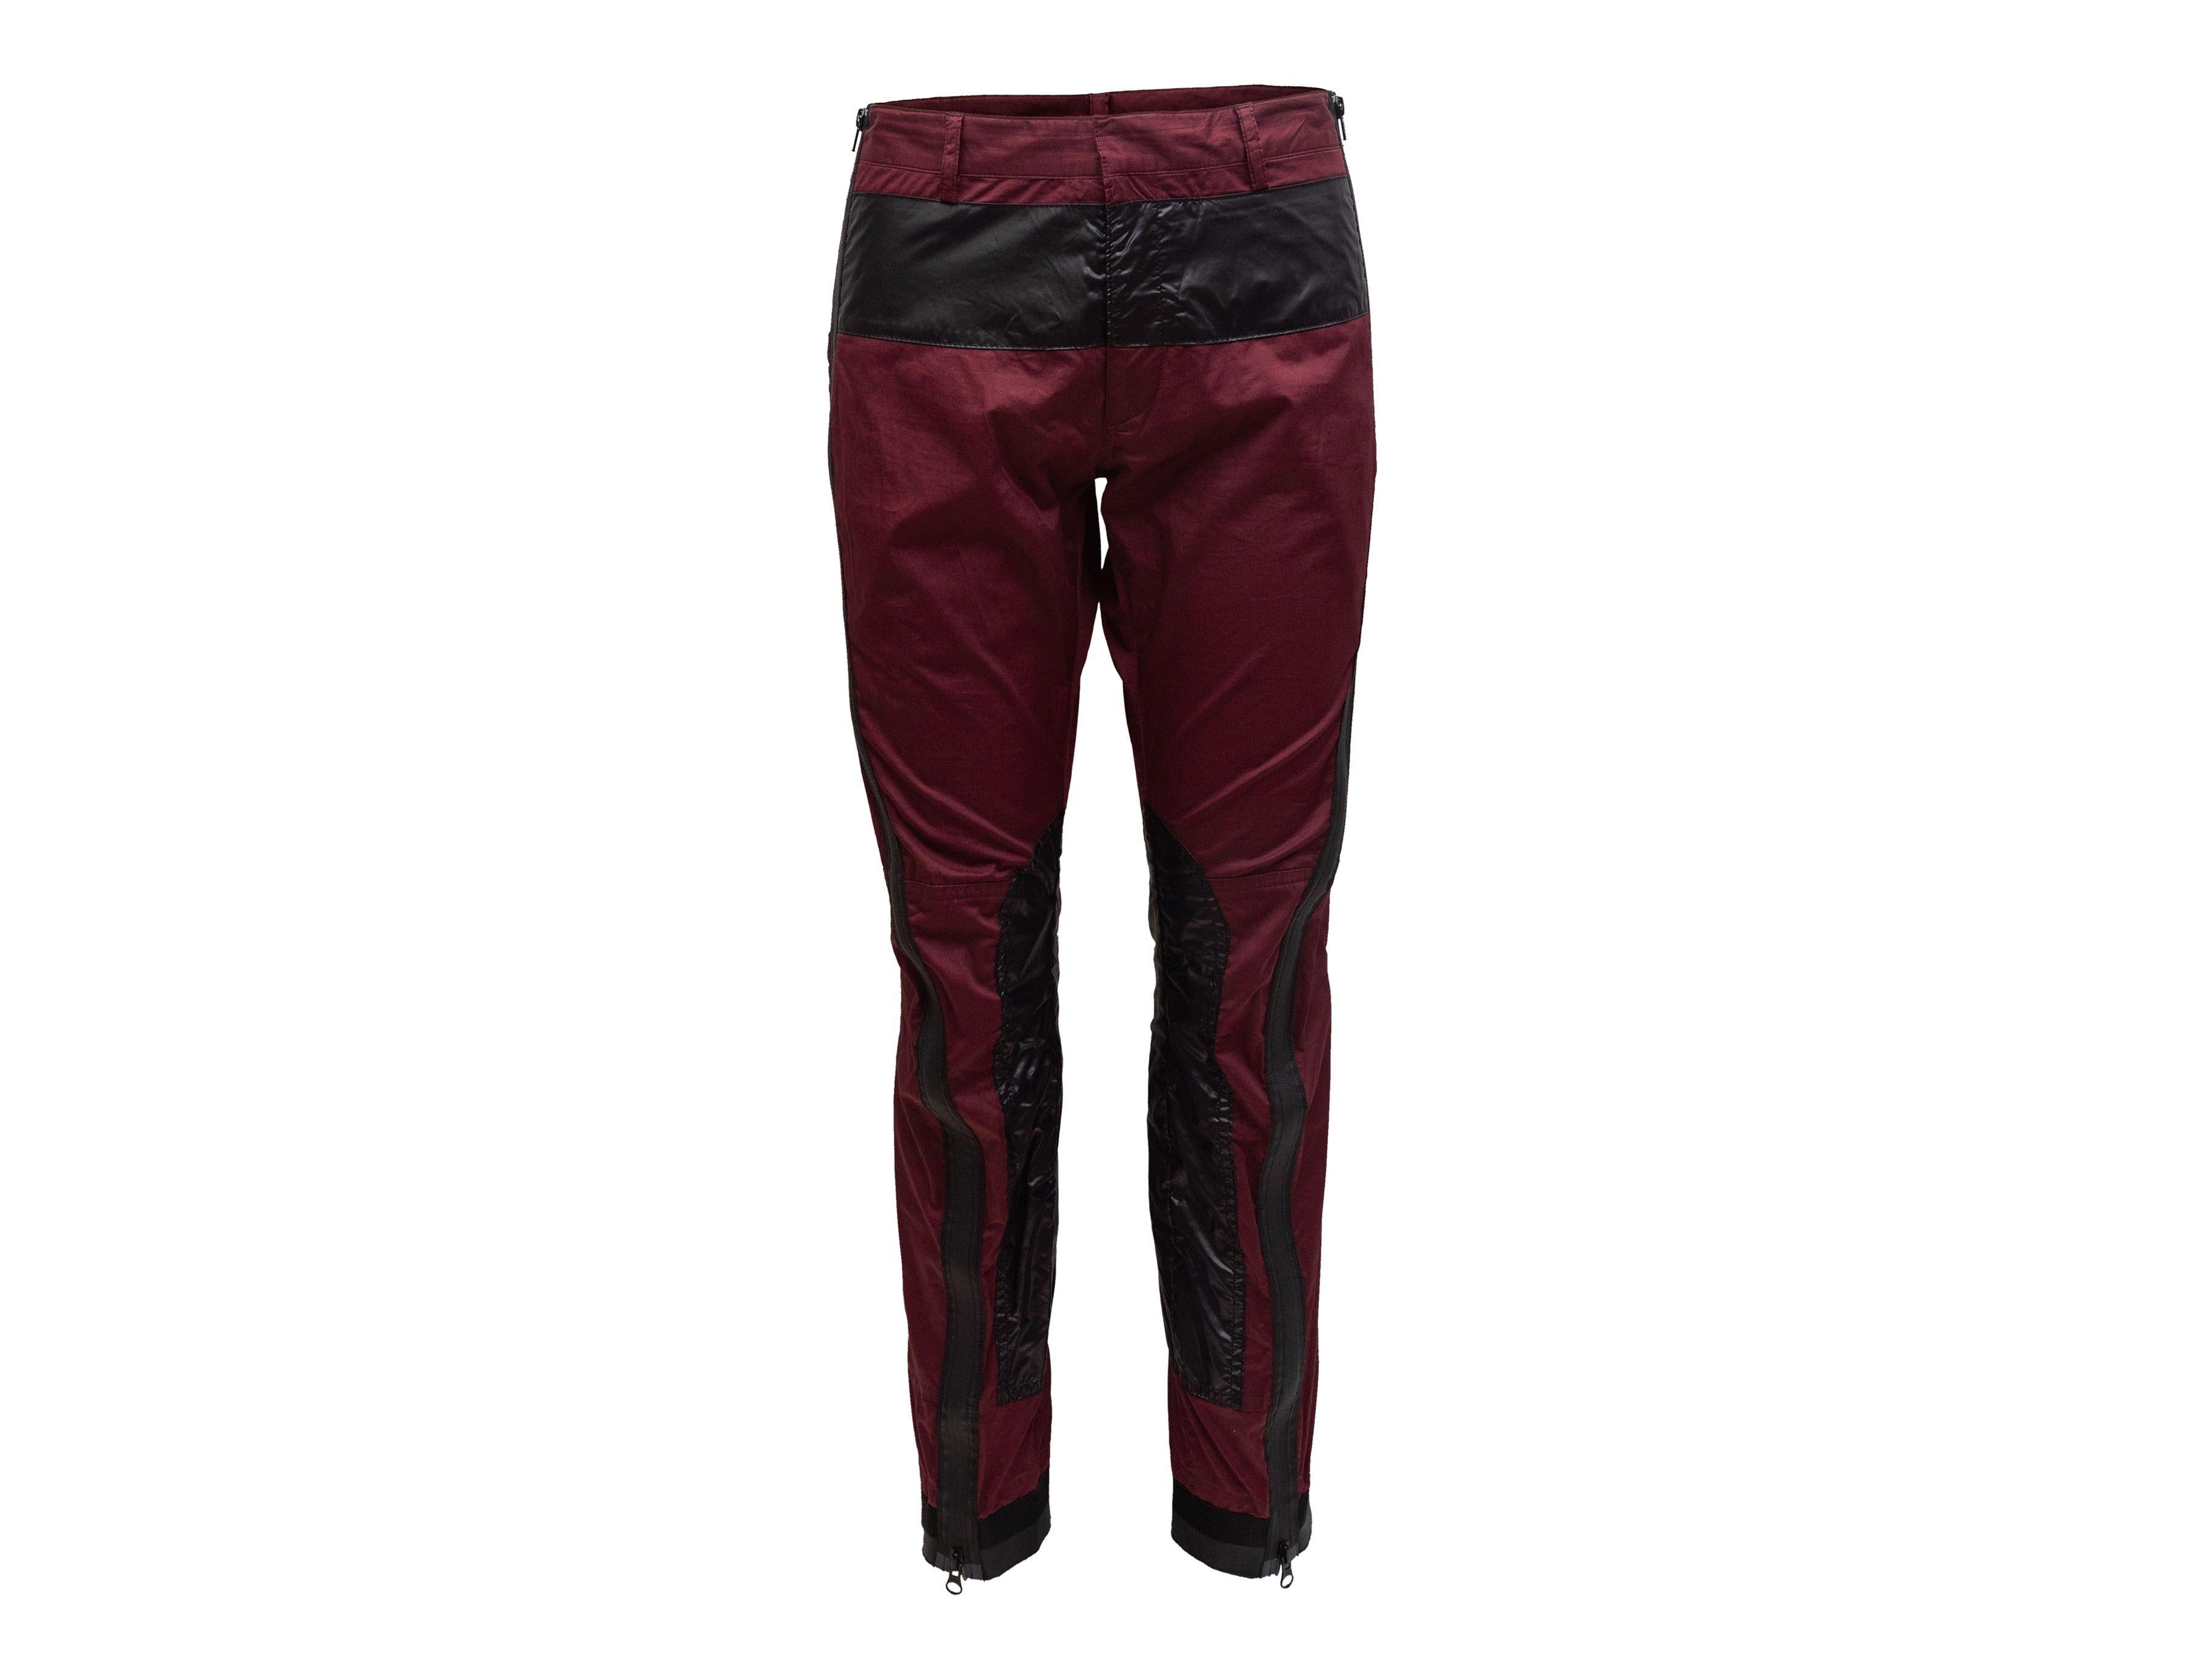 Women's or Men's Dries Van Noten Maroon & Black Color Block Pants